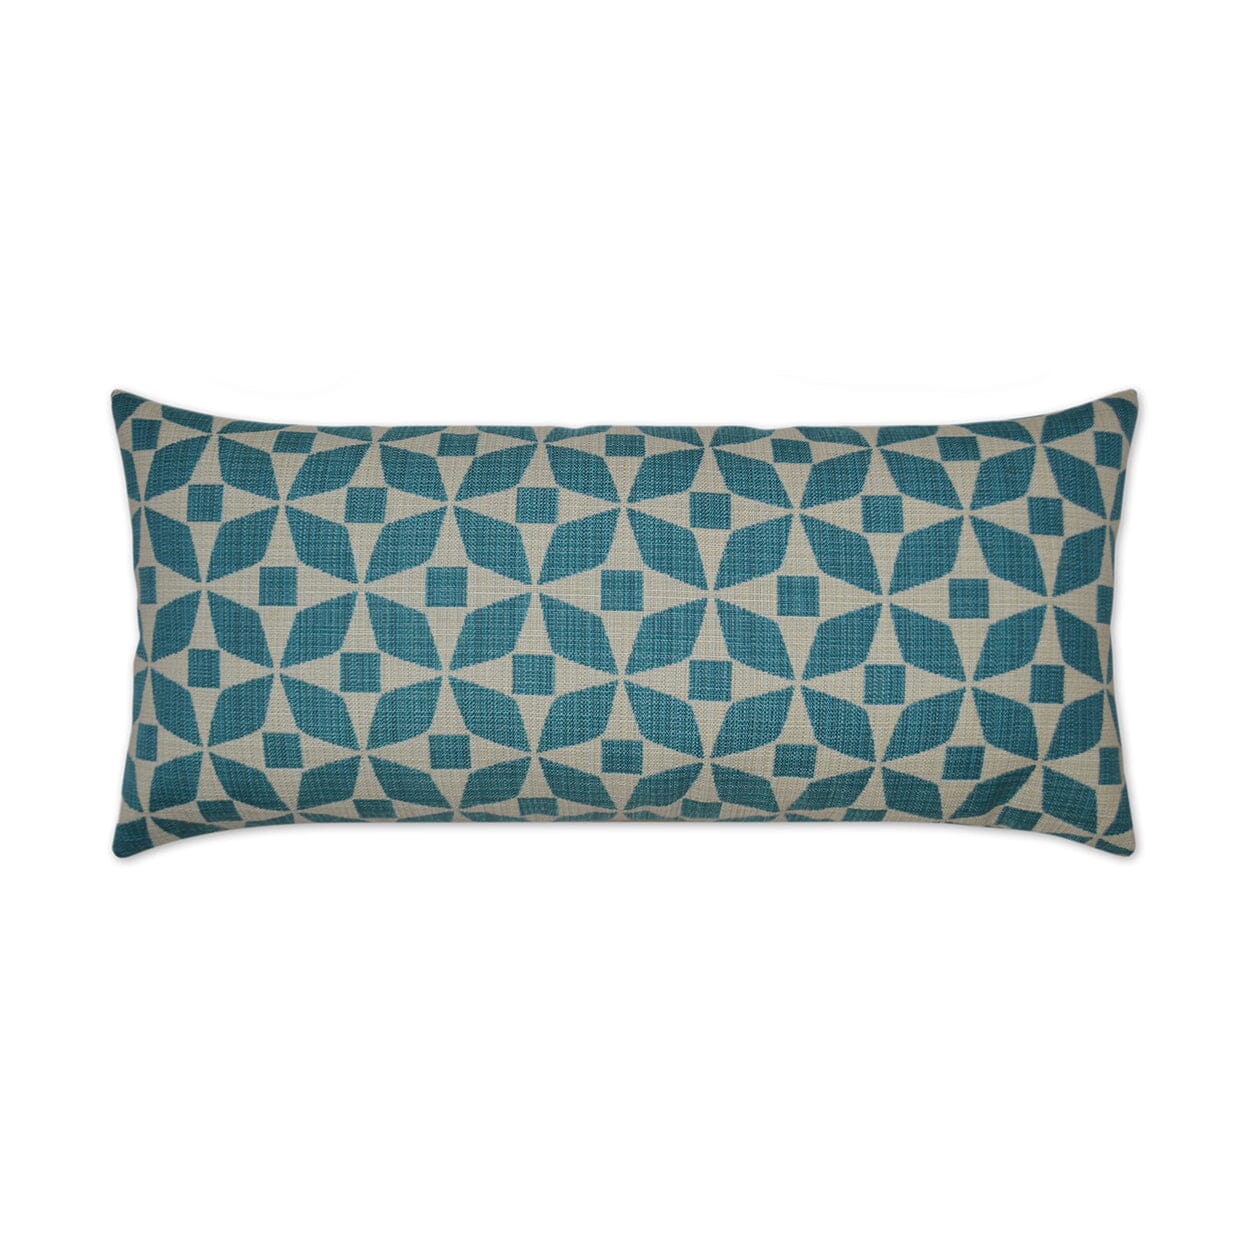 D.V. Kap 12" x 24" Outdoor Lumbar Pillow | Marquee Turquoise Pillows D.V Kap Outdoor